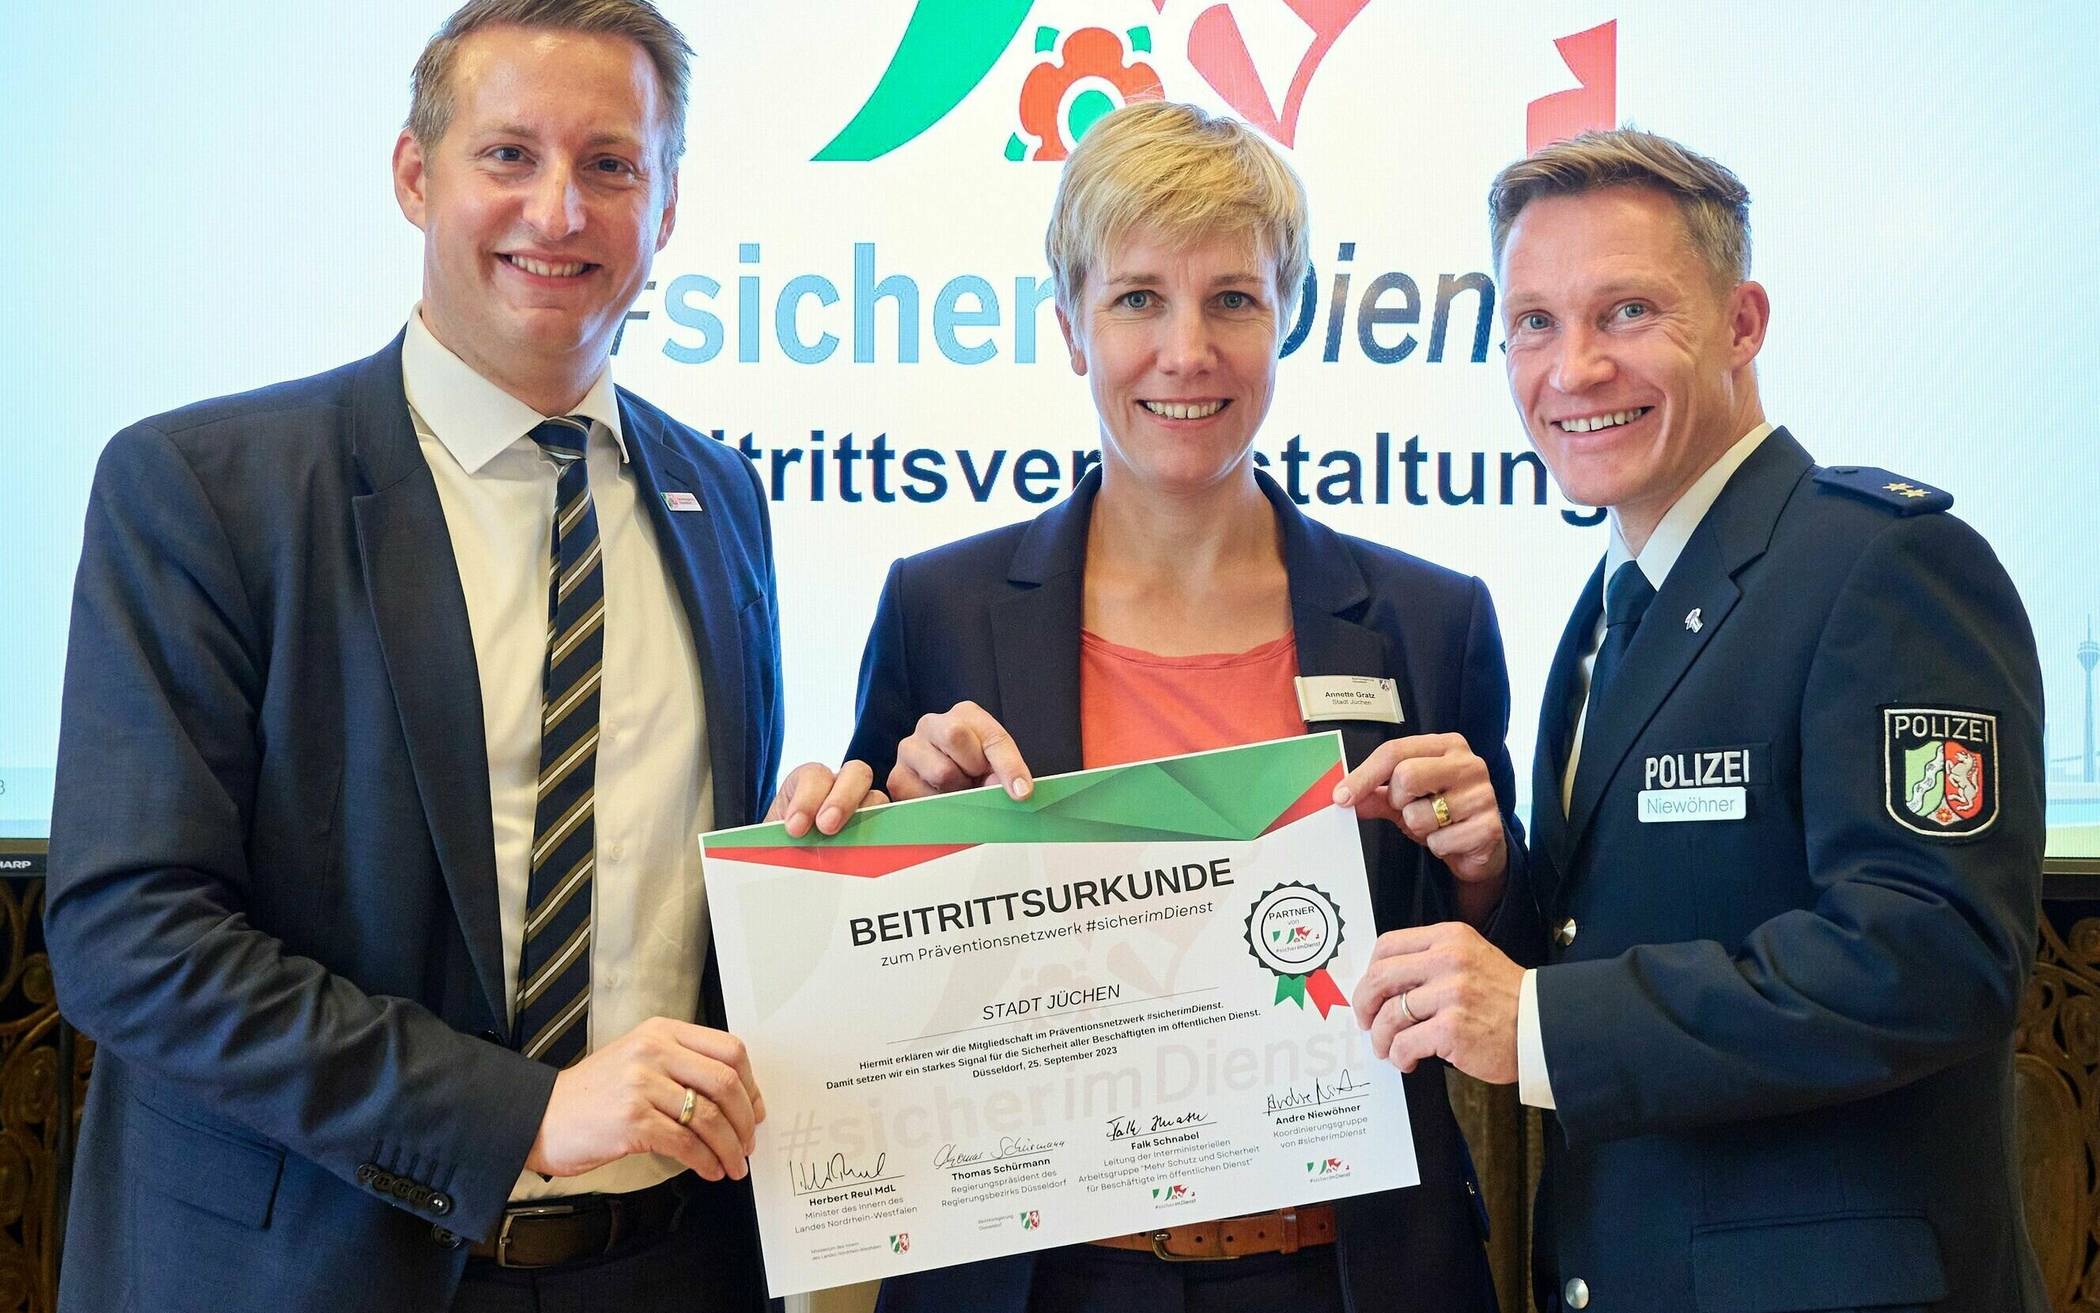  Von links: Regierungspräsident Thomas Schürmann, Jüchens Ordnungsdezernentin Annette Gratz und Polizeioberrat Andre Niewöhner.  